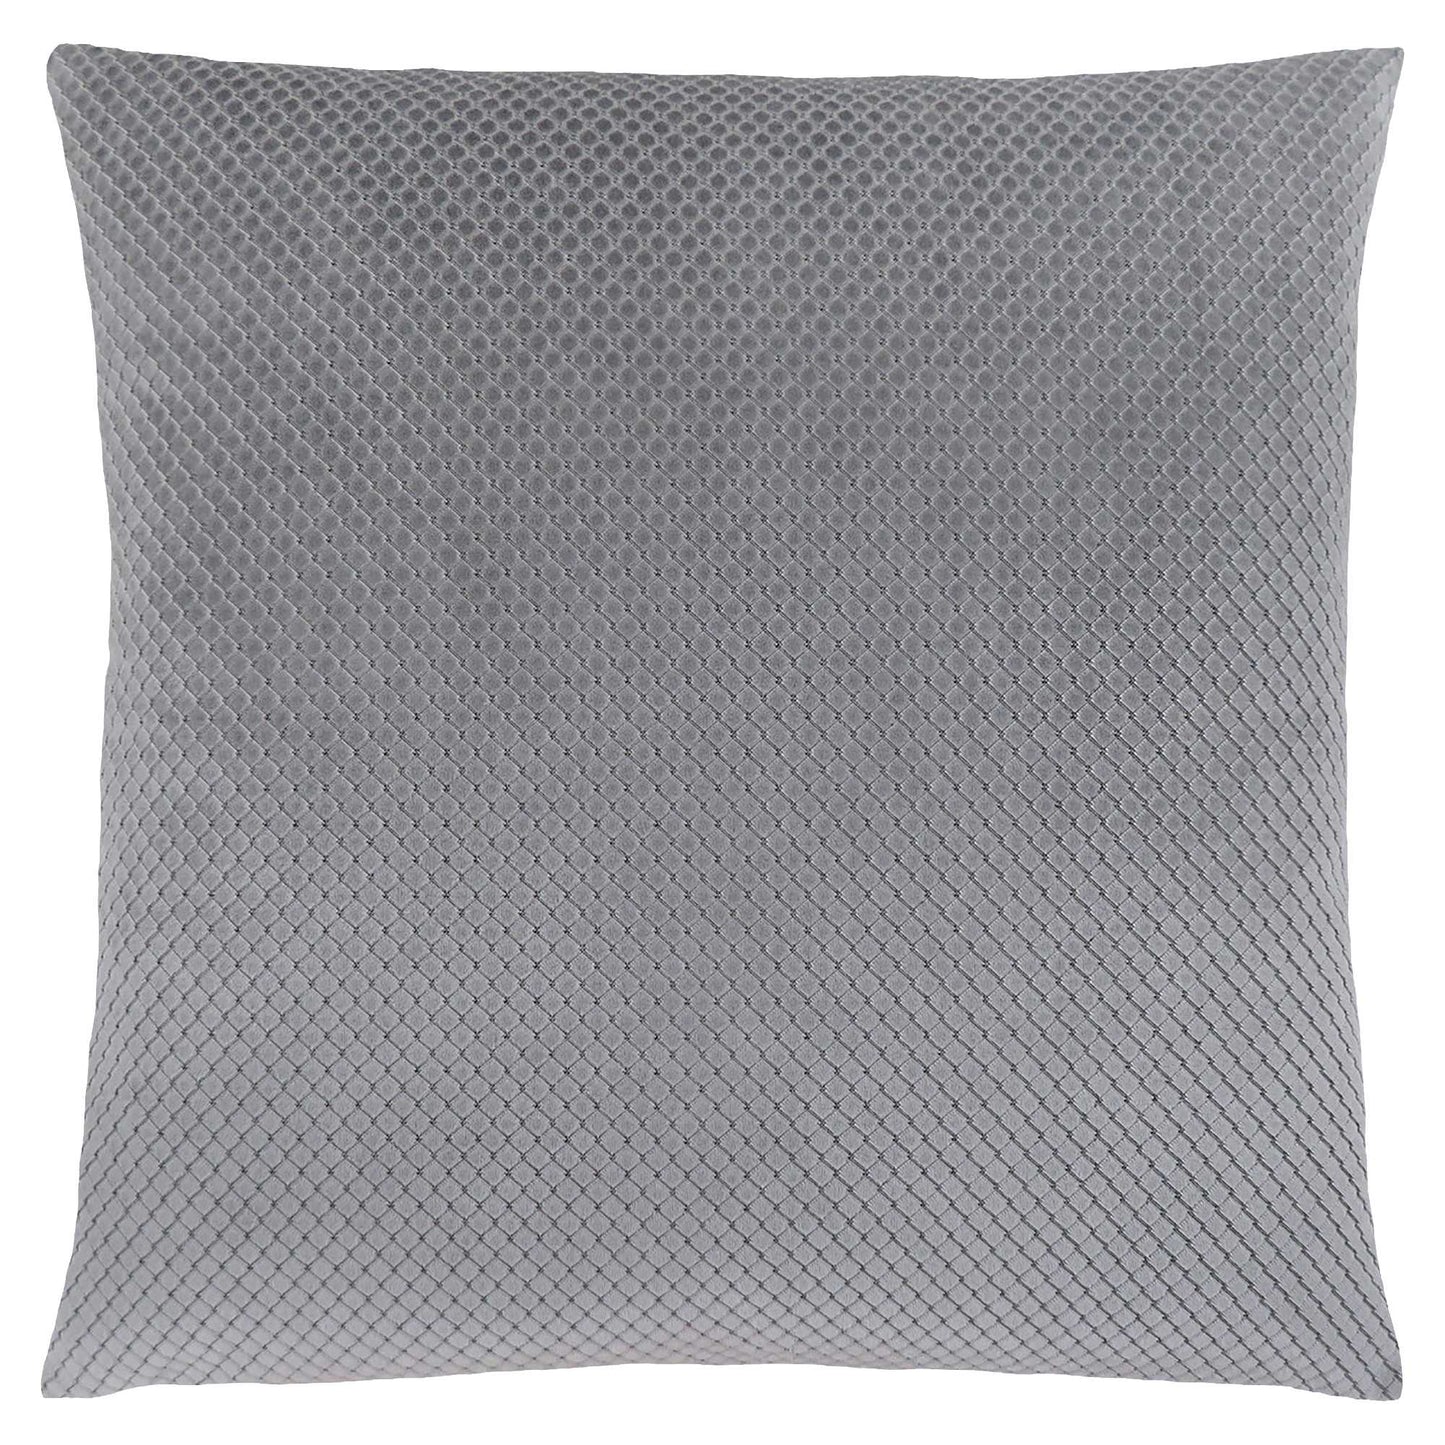 18" X 18" Silver Velvet Polyester Diamond Zippered Pillow